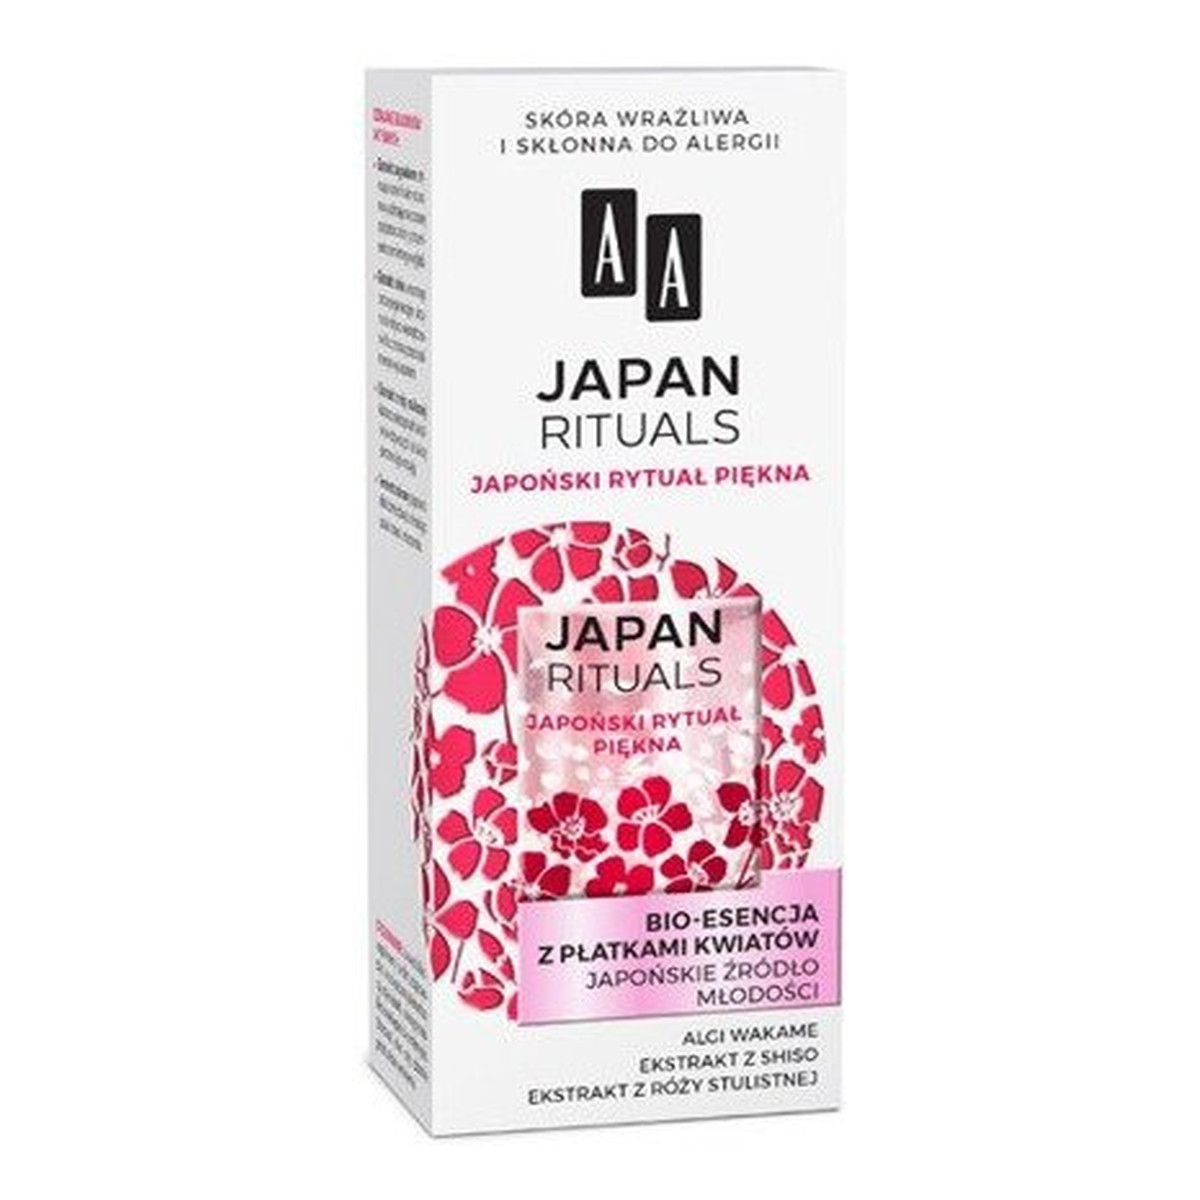 AA Japan Rituals Bio-Esencja z płatkami kwiatów - japońskie źródło młodości 35ml